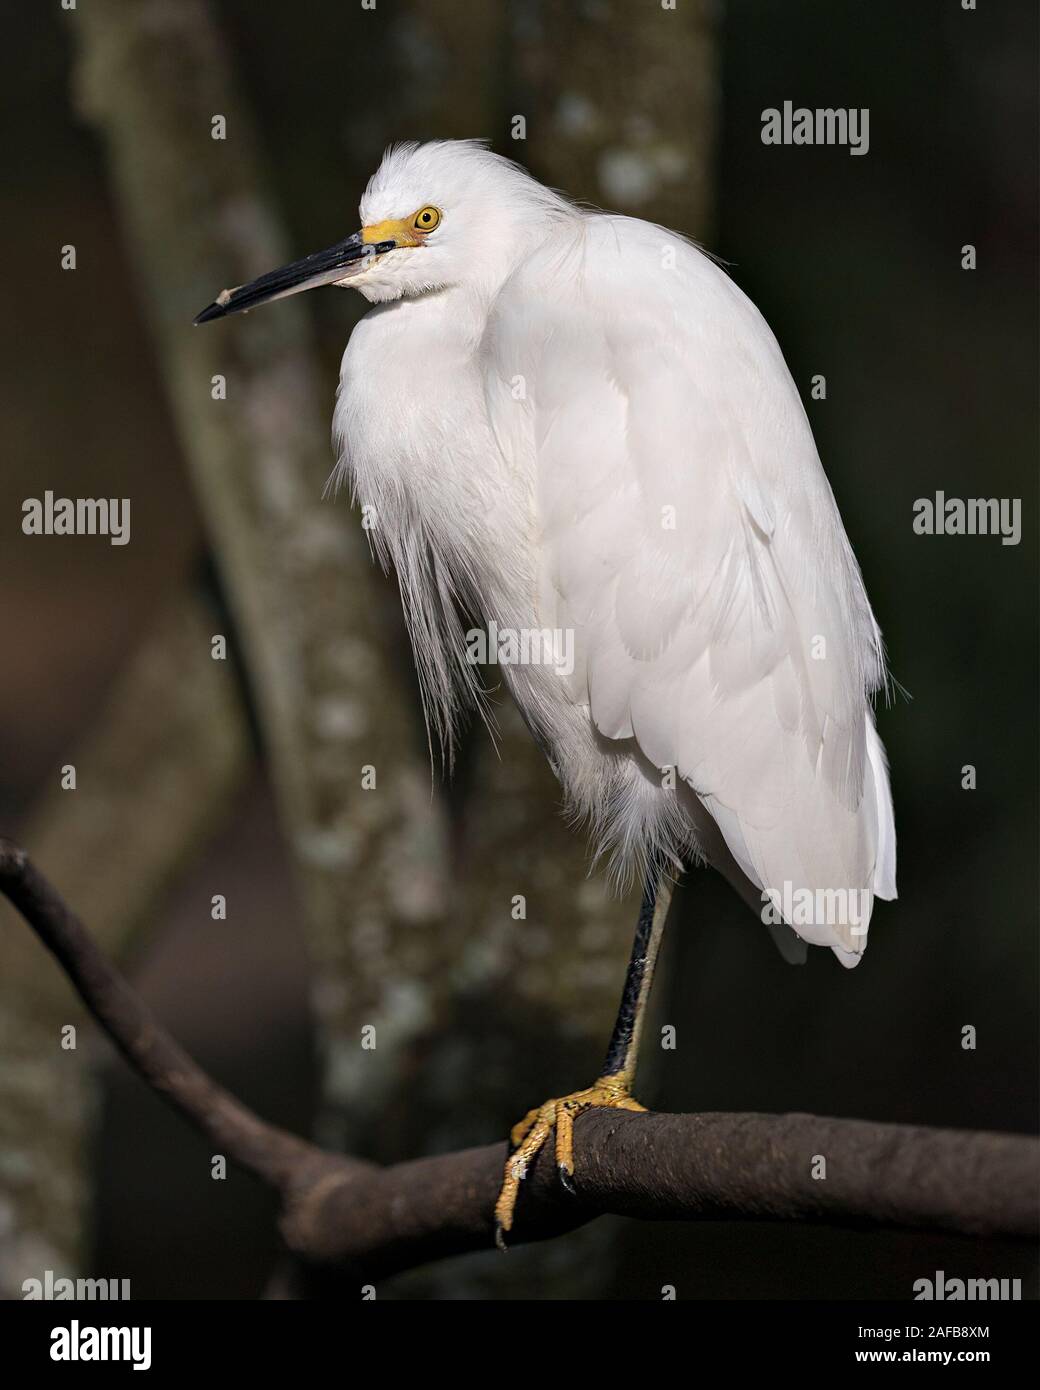 Snowy Egret close up Profil anzeigen auf Zweig anzeigen weißes Gefieder, Kopf, Schnabel, Augen, Füße in seine Umwelt und Umgebung, mit einem dunklen Bac Stockfoto